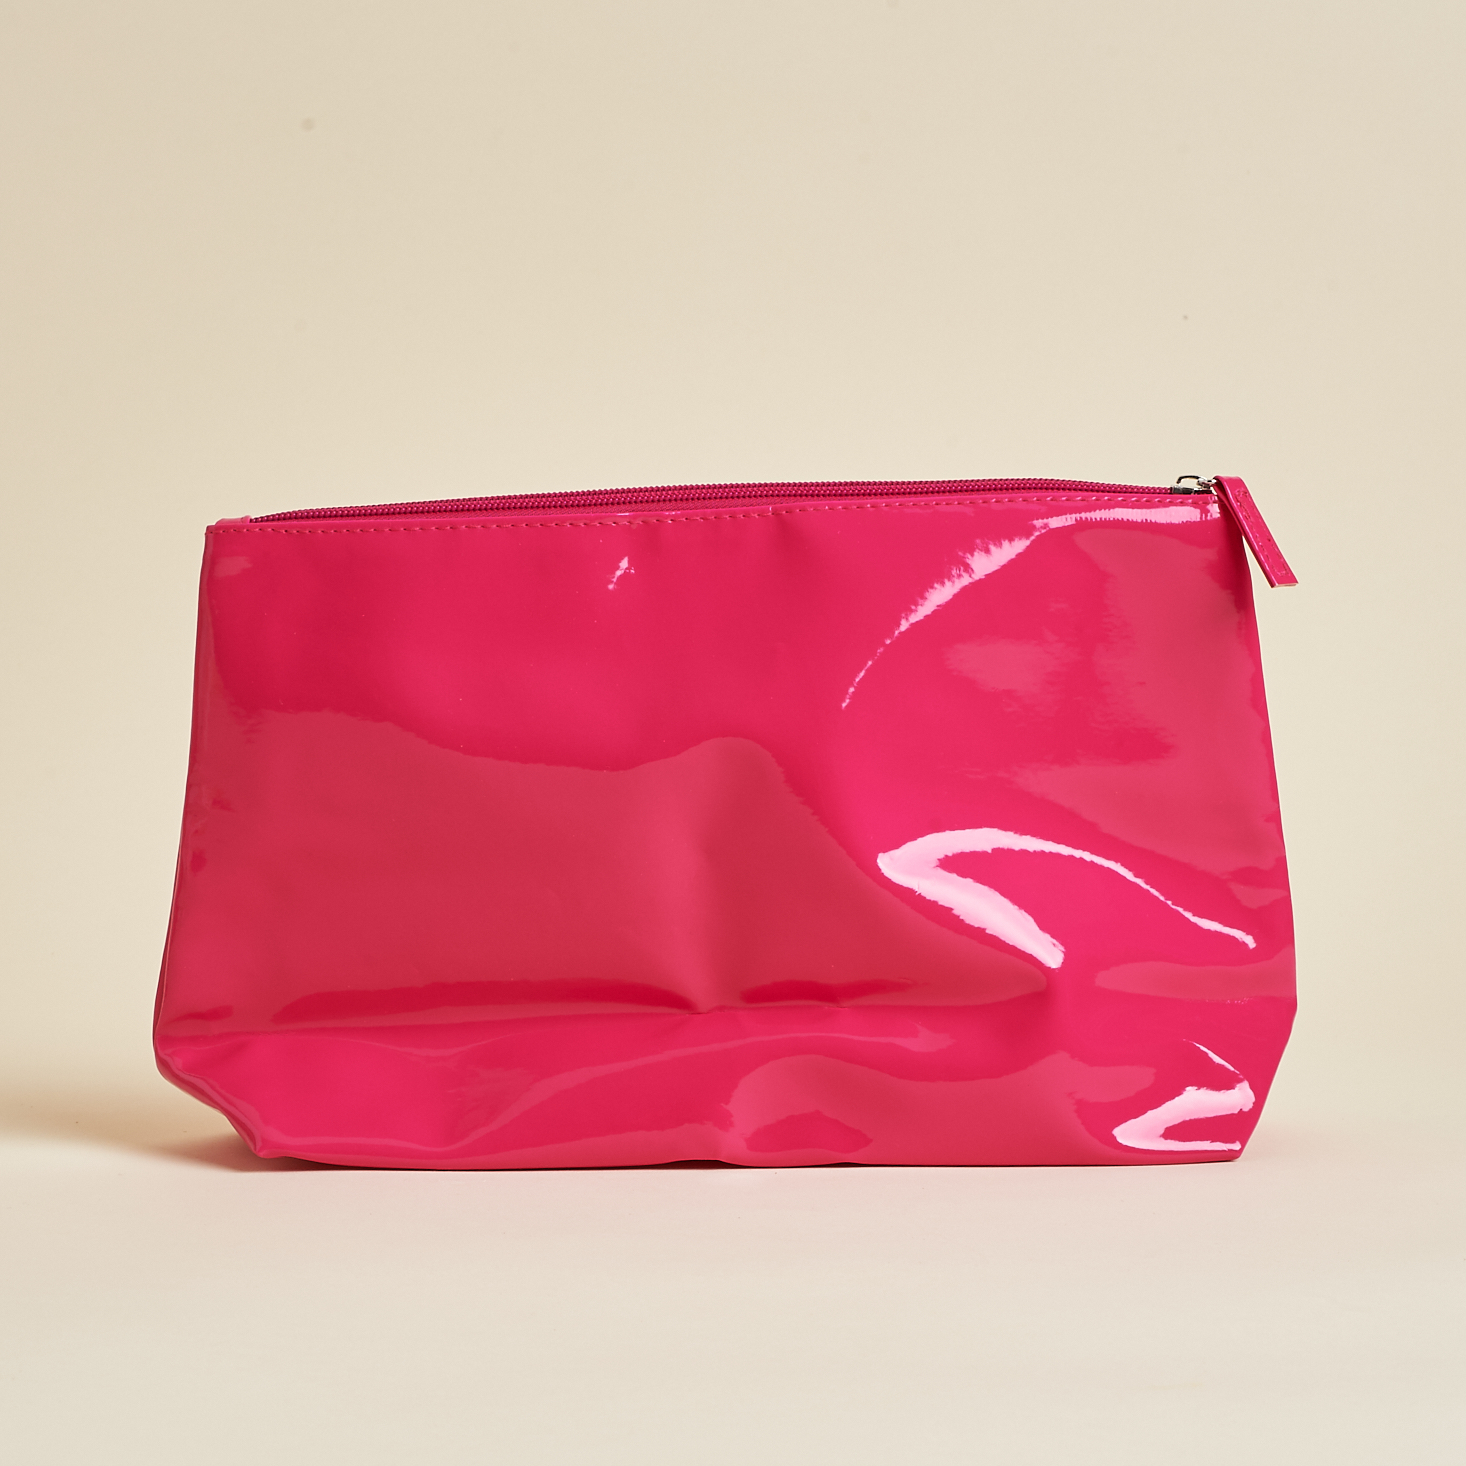 other side of pink makeup bag